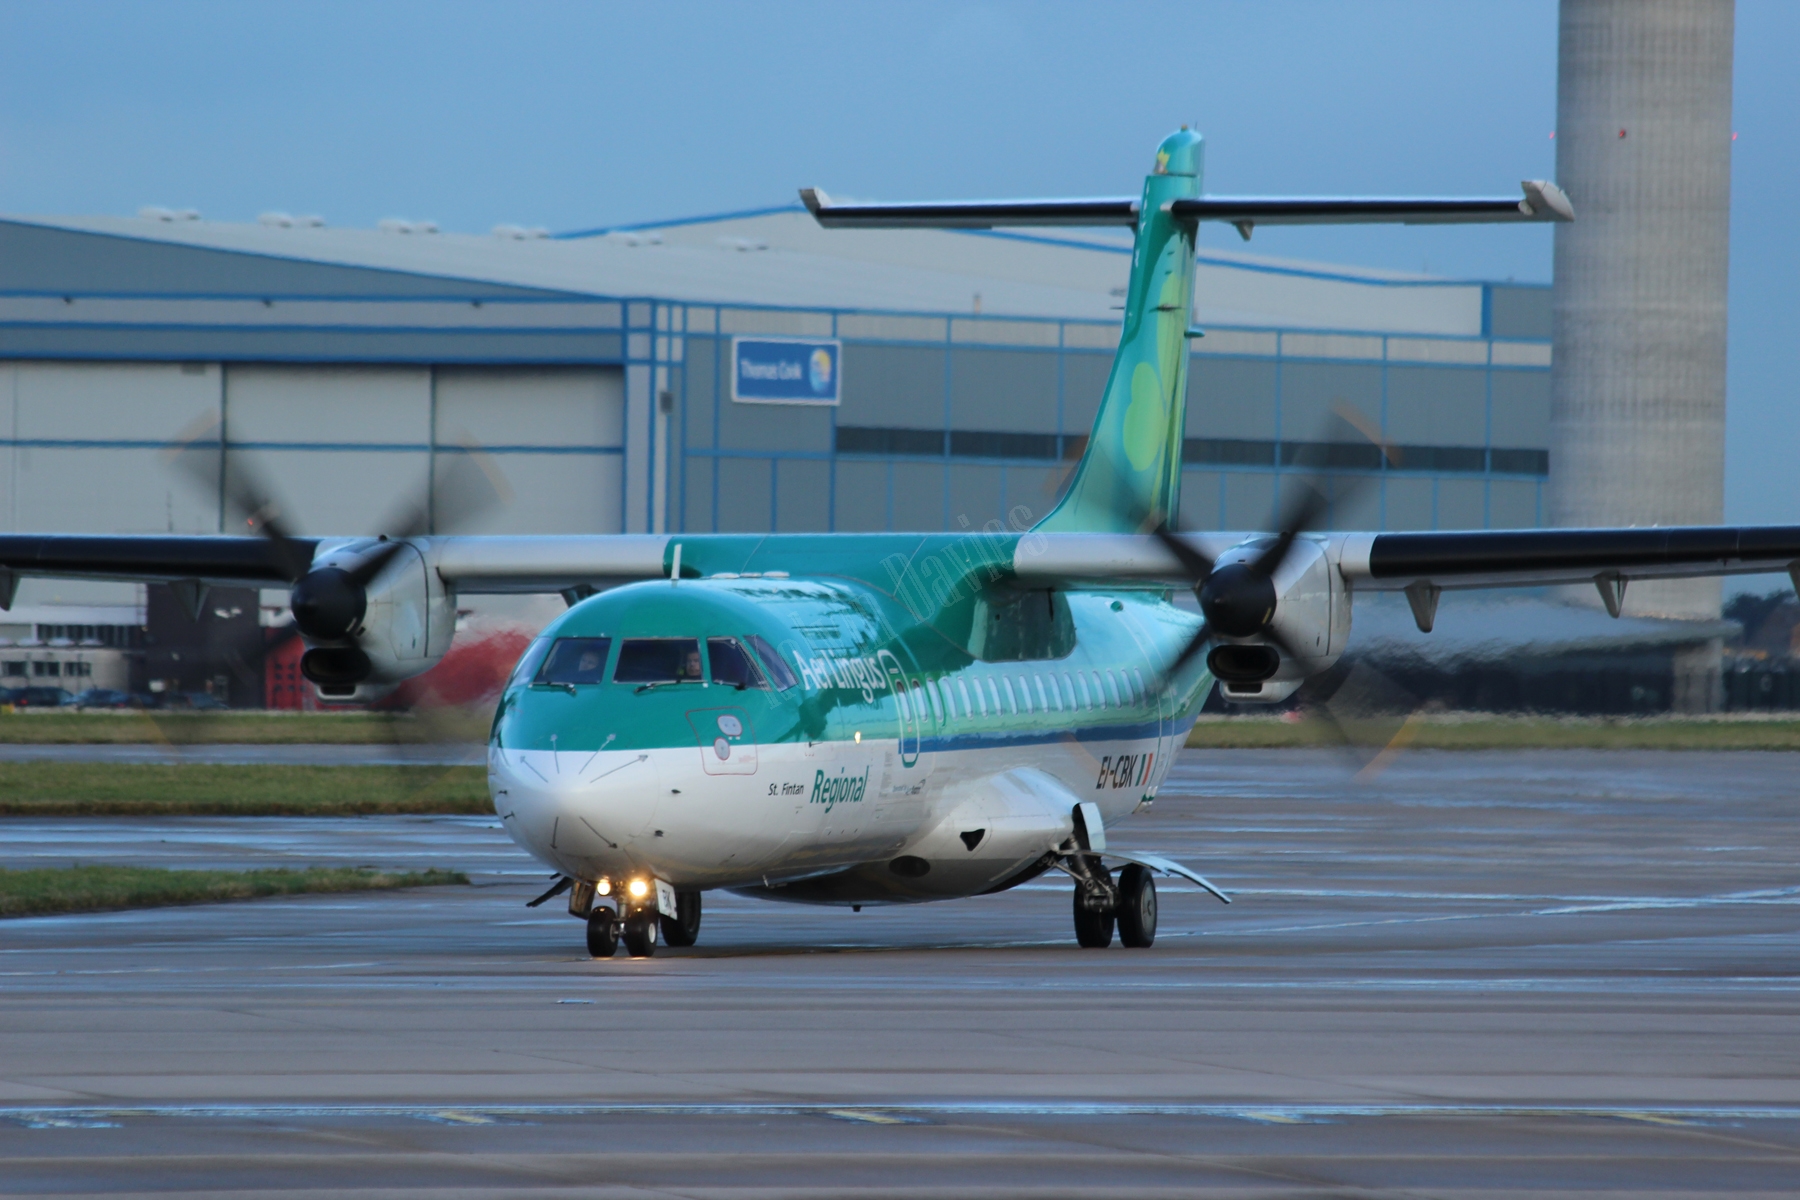 Aer Arran ATR42 EI-CBK